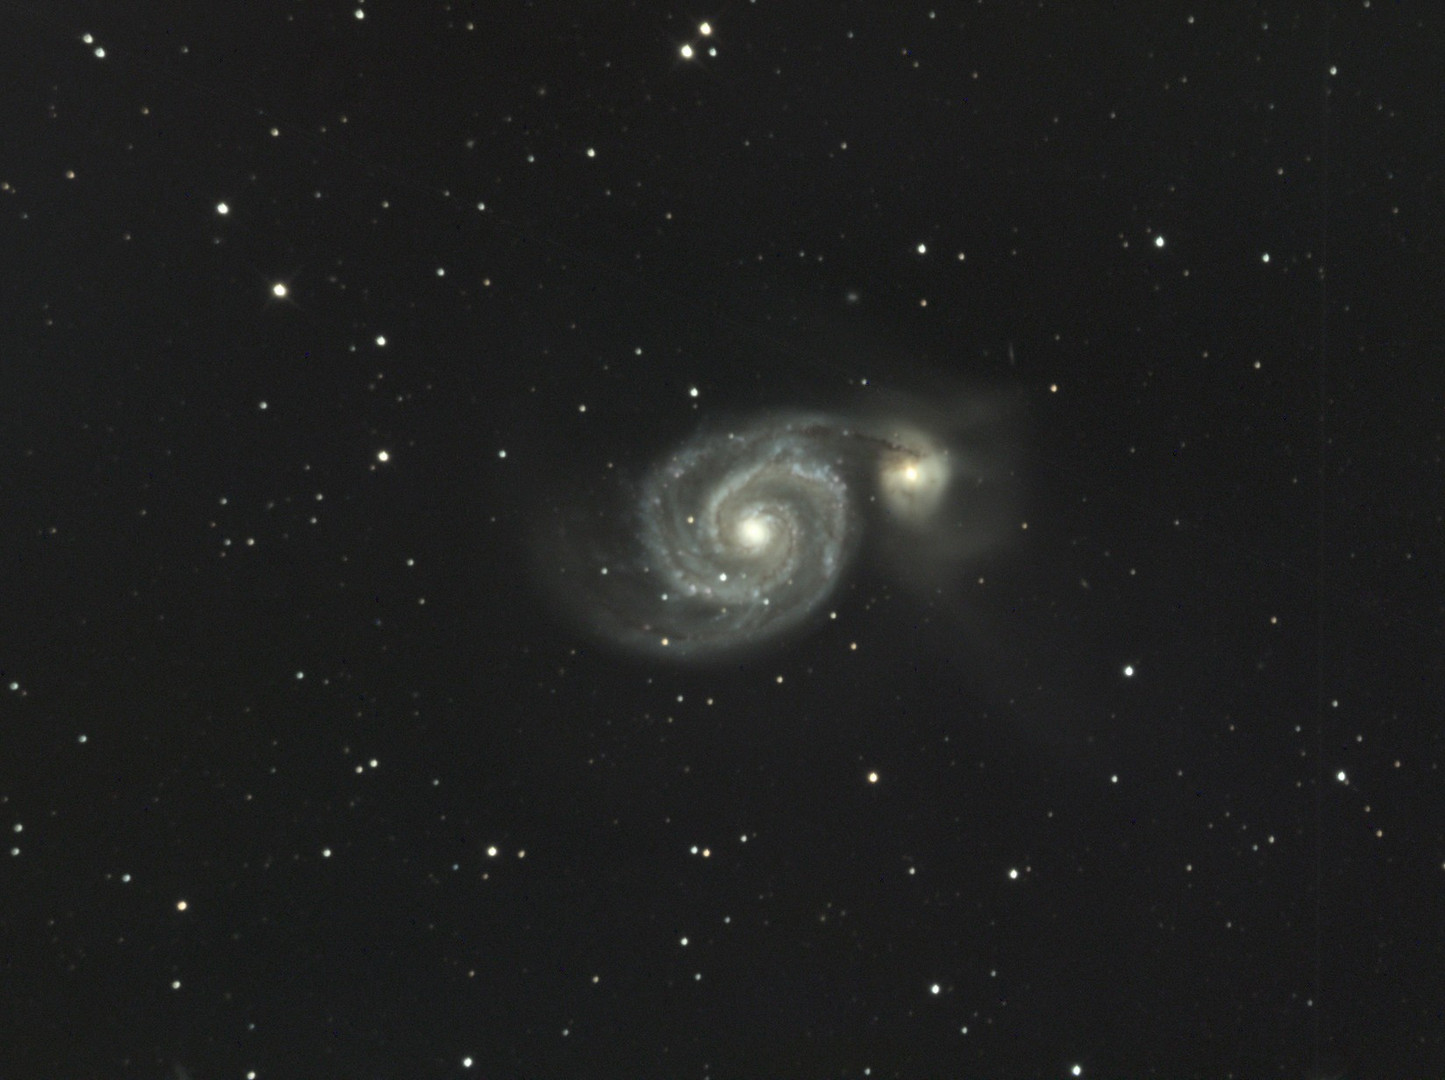 Galaxie Messier 51 im Sternbild Jagdhunde